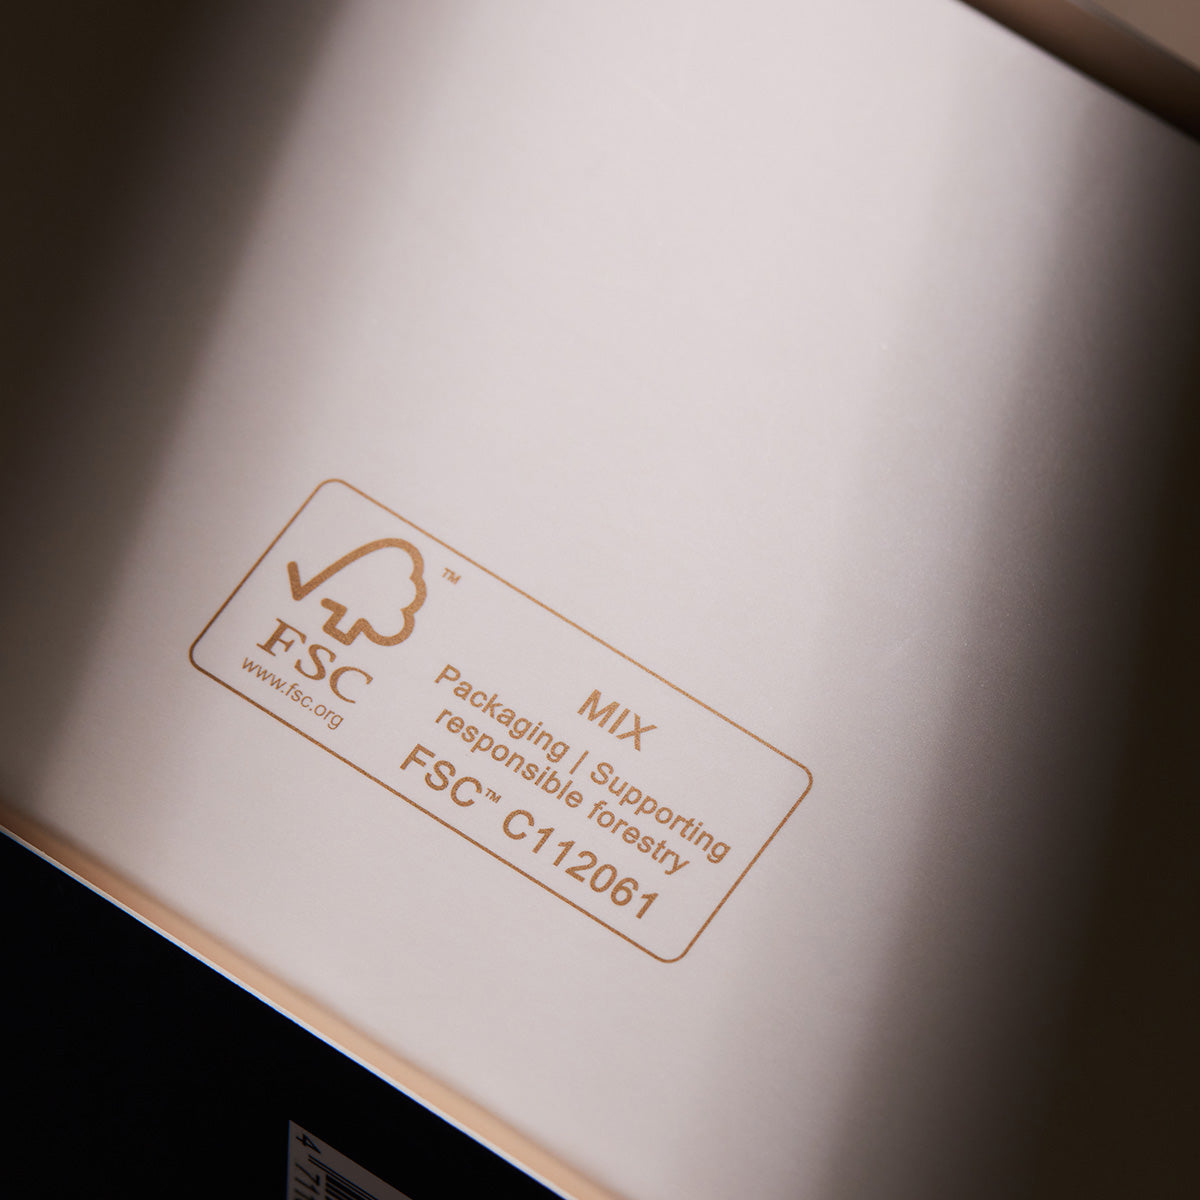 中秋聯名禮盒包材使用FSC驗證環境友善材質